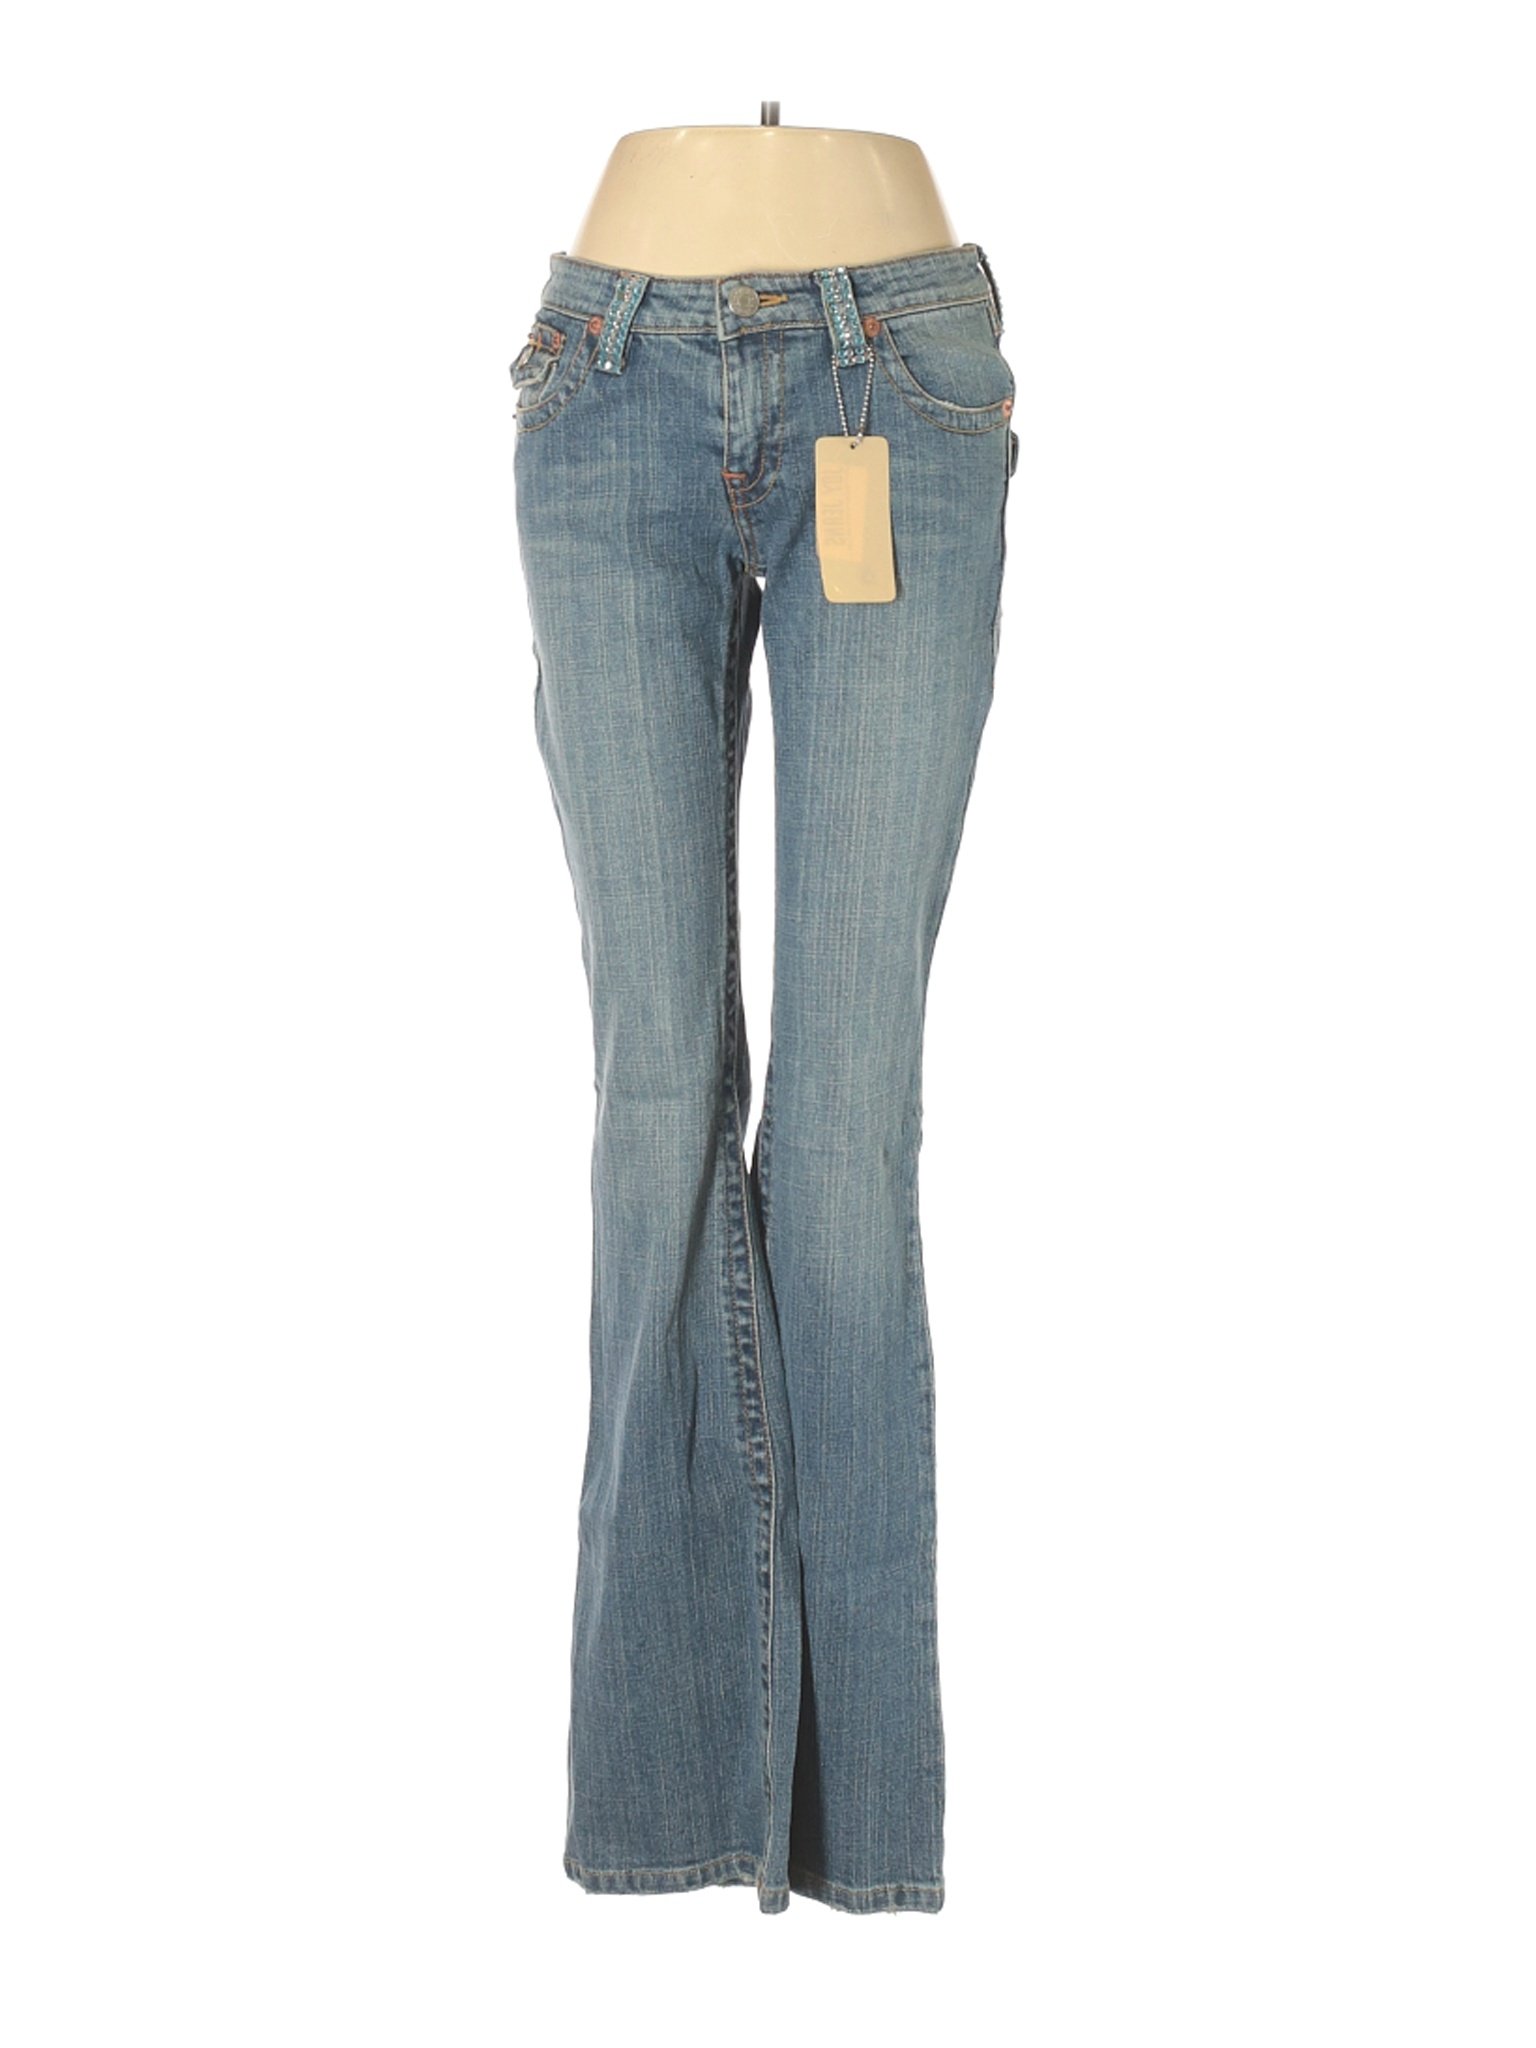 NWT Joy Jeans Women Blue Jeans 9 | eBay